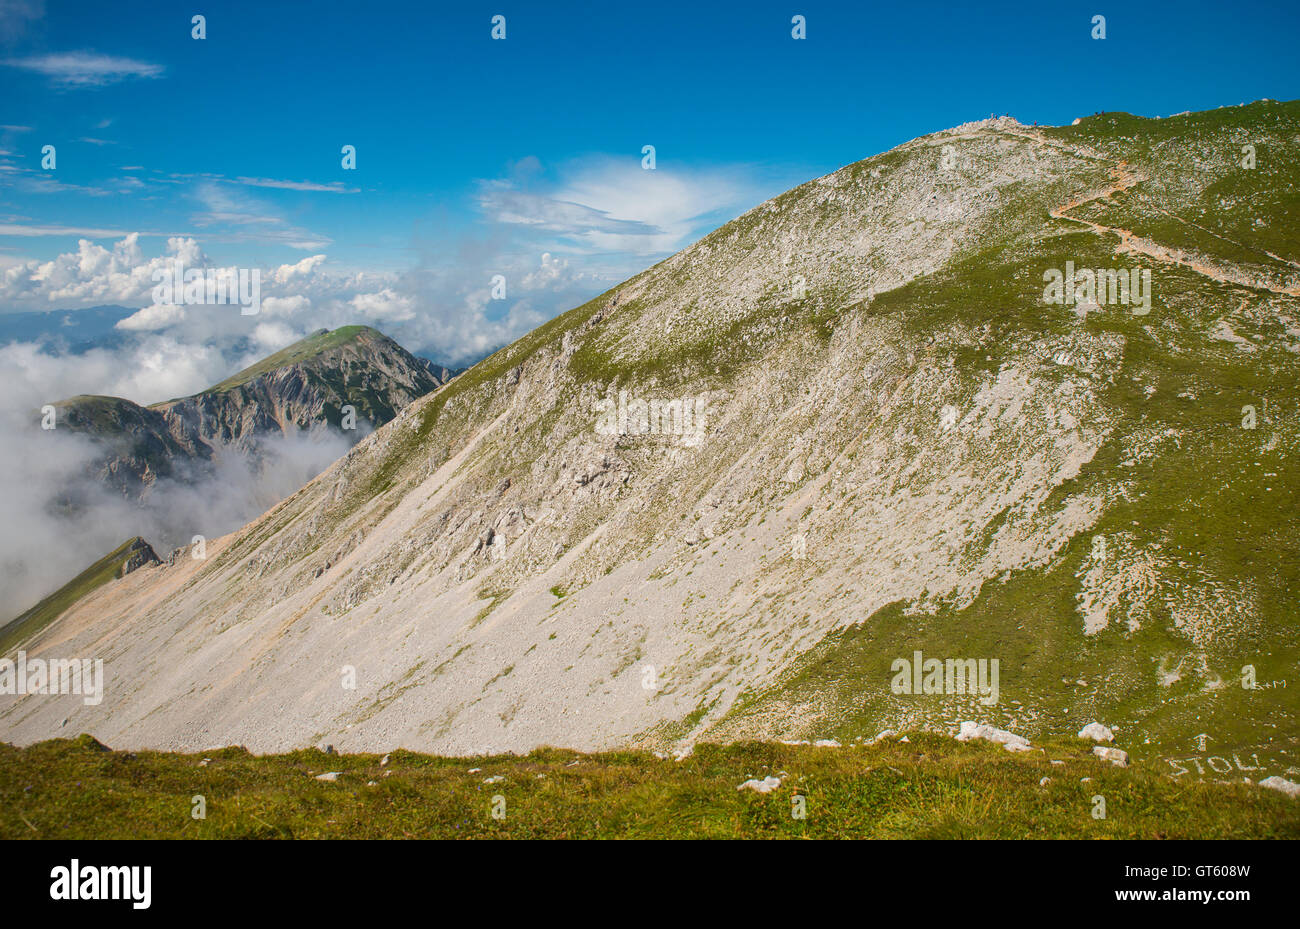 Stol mountain, Karavanke, Slovenia Stock Photo - Alamy